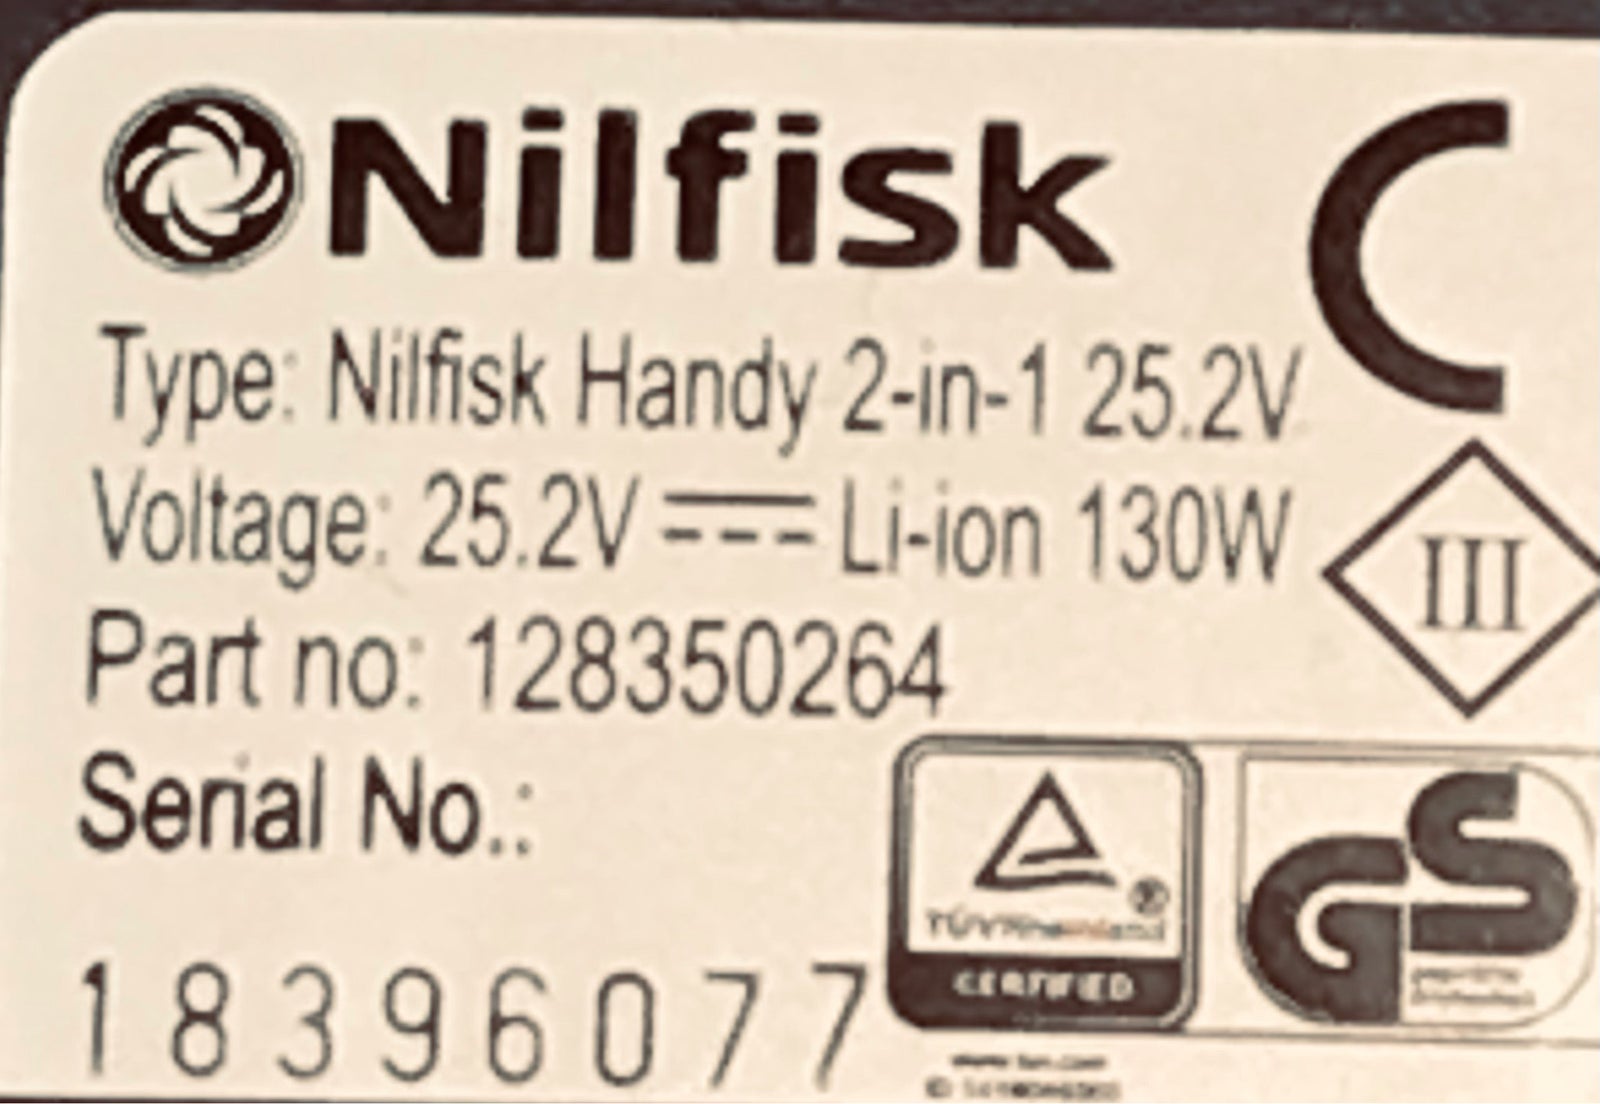 Håndstøvsuger, Nilfisk Handy 25.2v, 130 watt